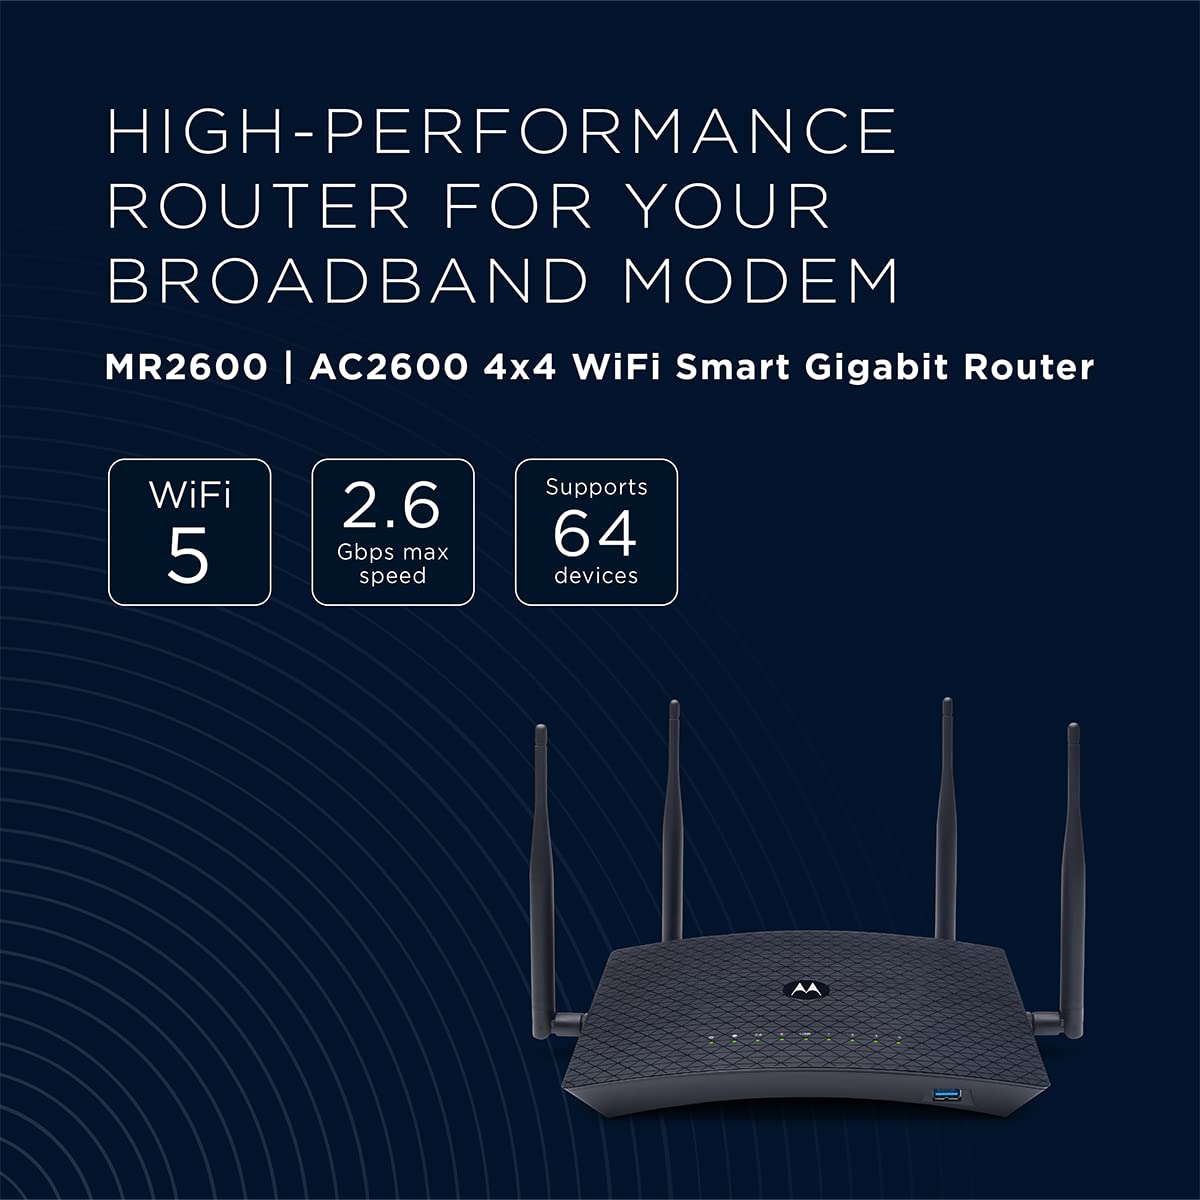 Motorola AC2600 4x4 WiFi Smart Gigabit Router with Extended Range, Model MR2600